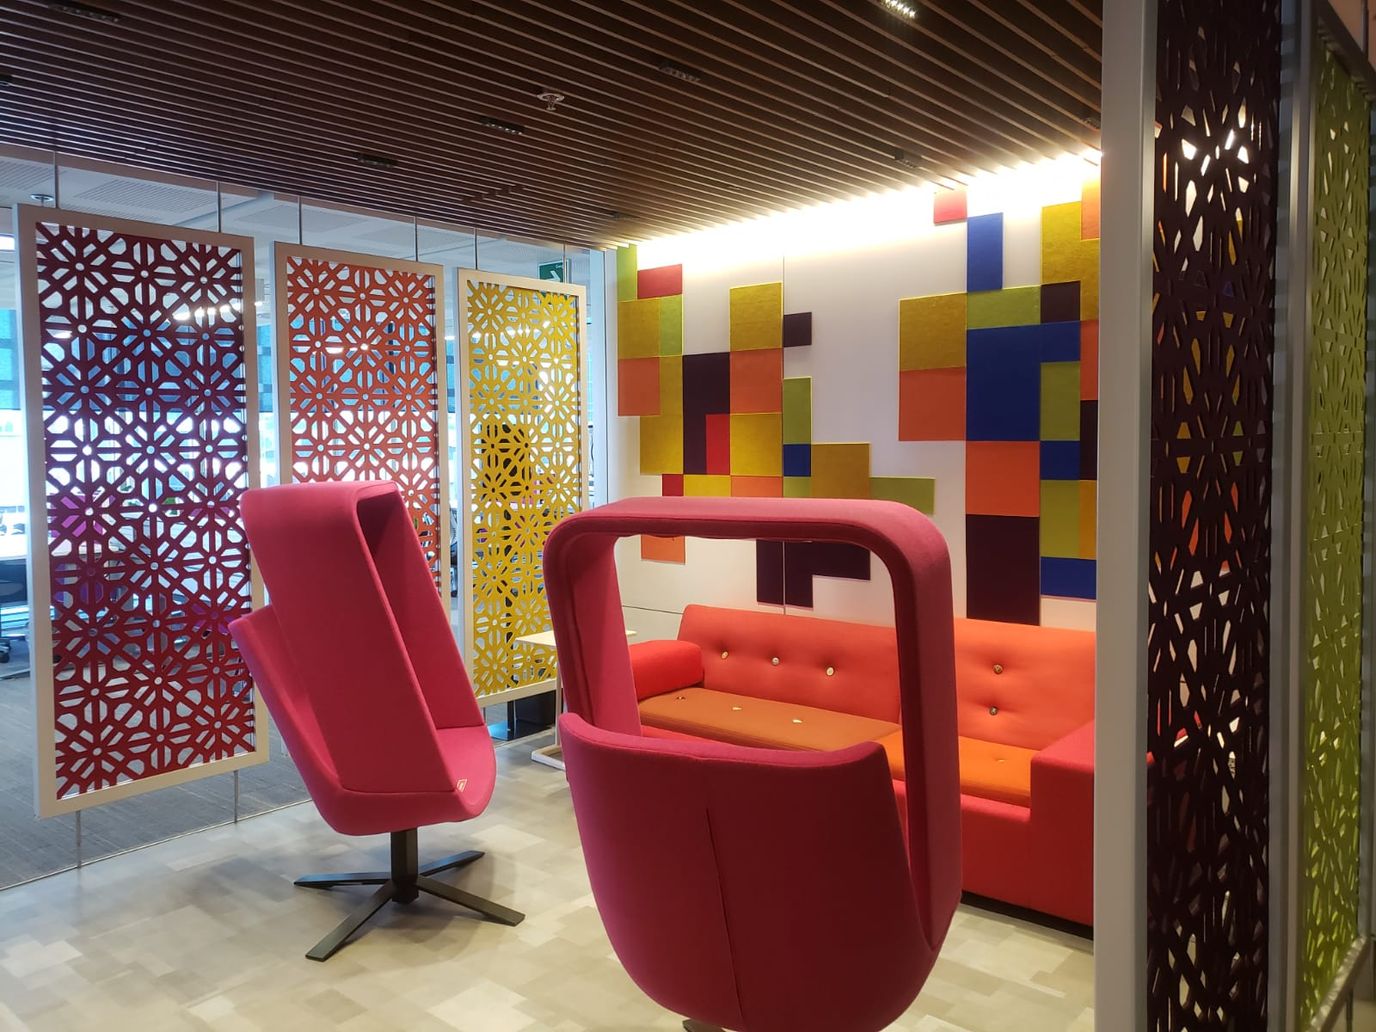 파펠 피카도에 영감을 받아 디자인한 패널, 주황색 소파와 빨간색 의자가 보이는 멕시코시티 오피스의 모습.